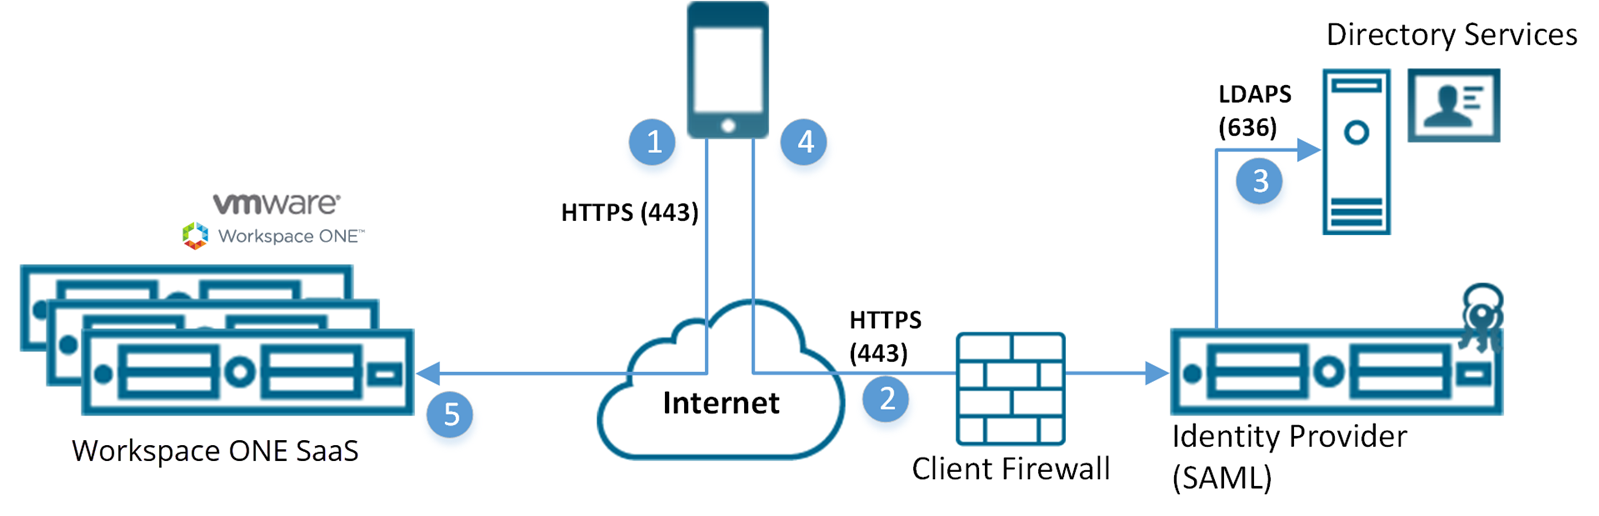 此图显示 Workspace ONE SaaS 服务器通过 Internet 从设备接收输入并穿越防火墙访问 SAML 身份提供程序。